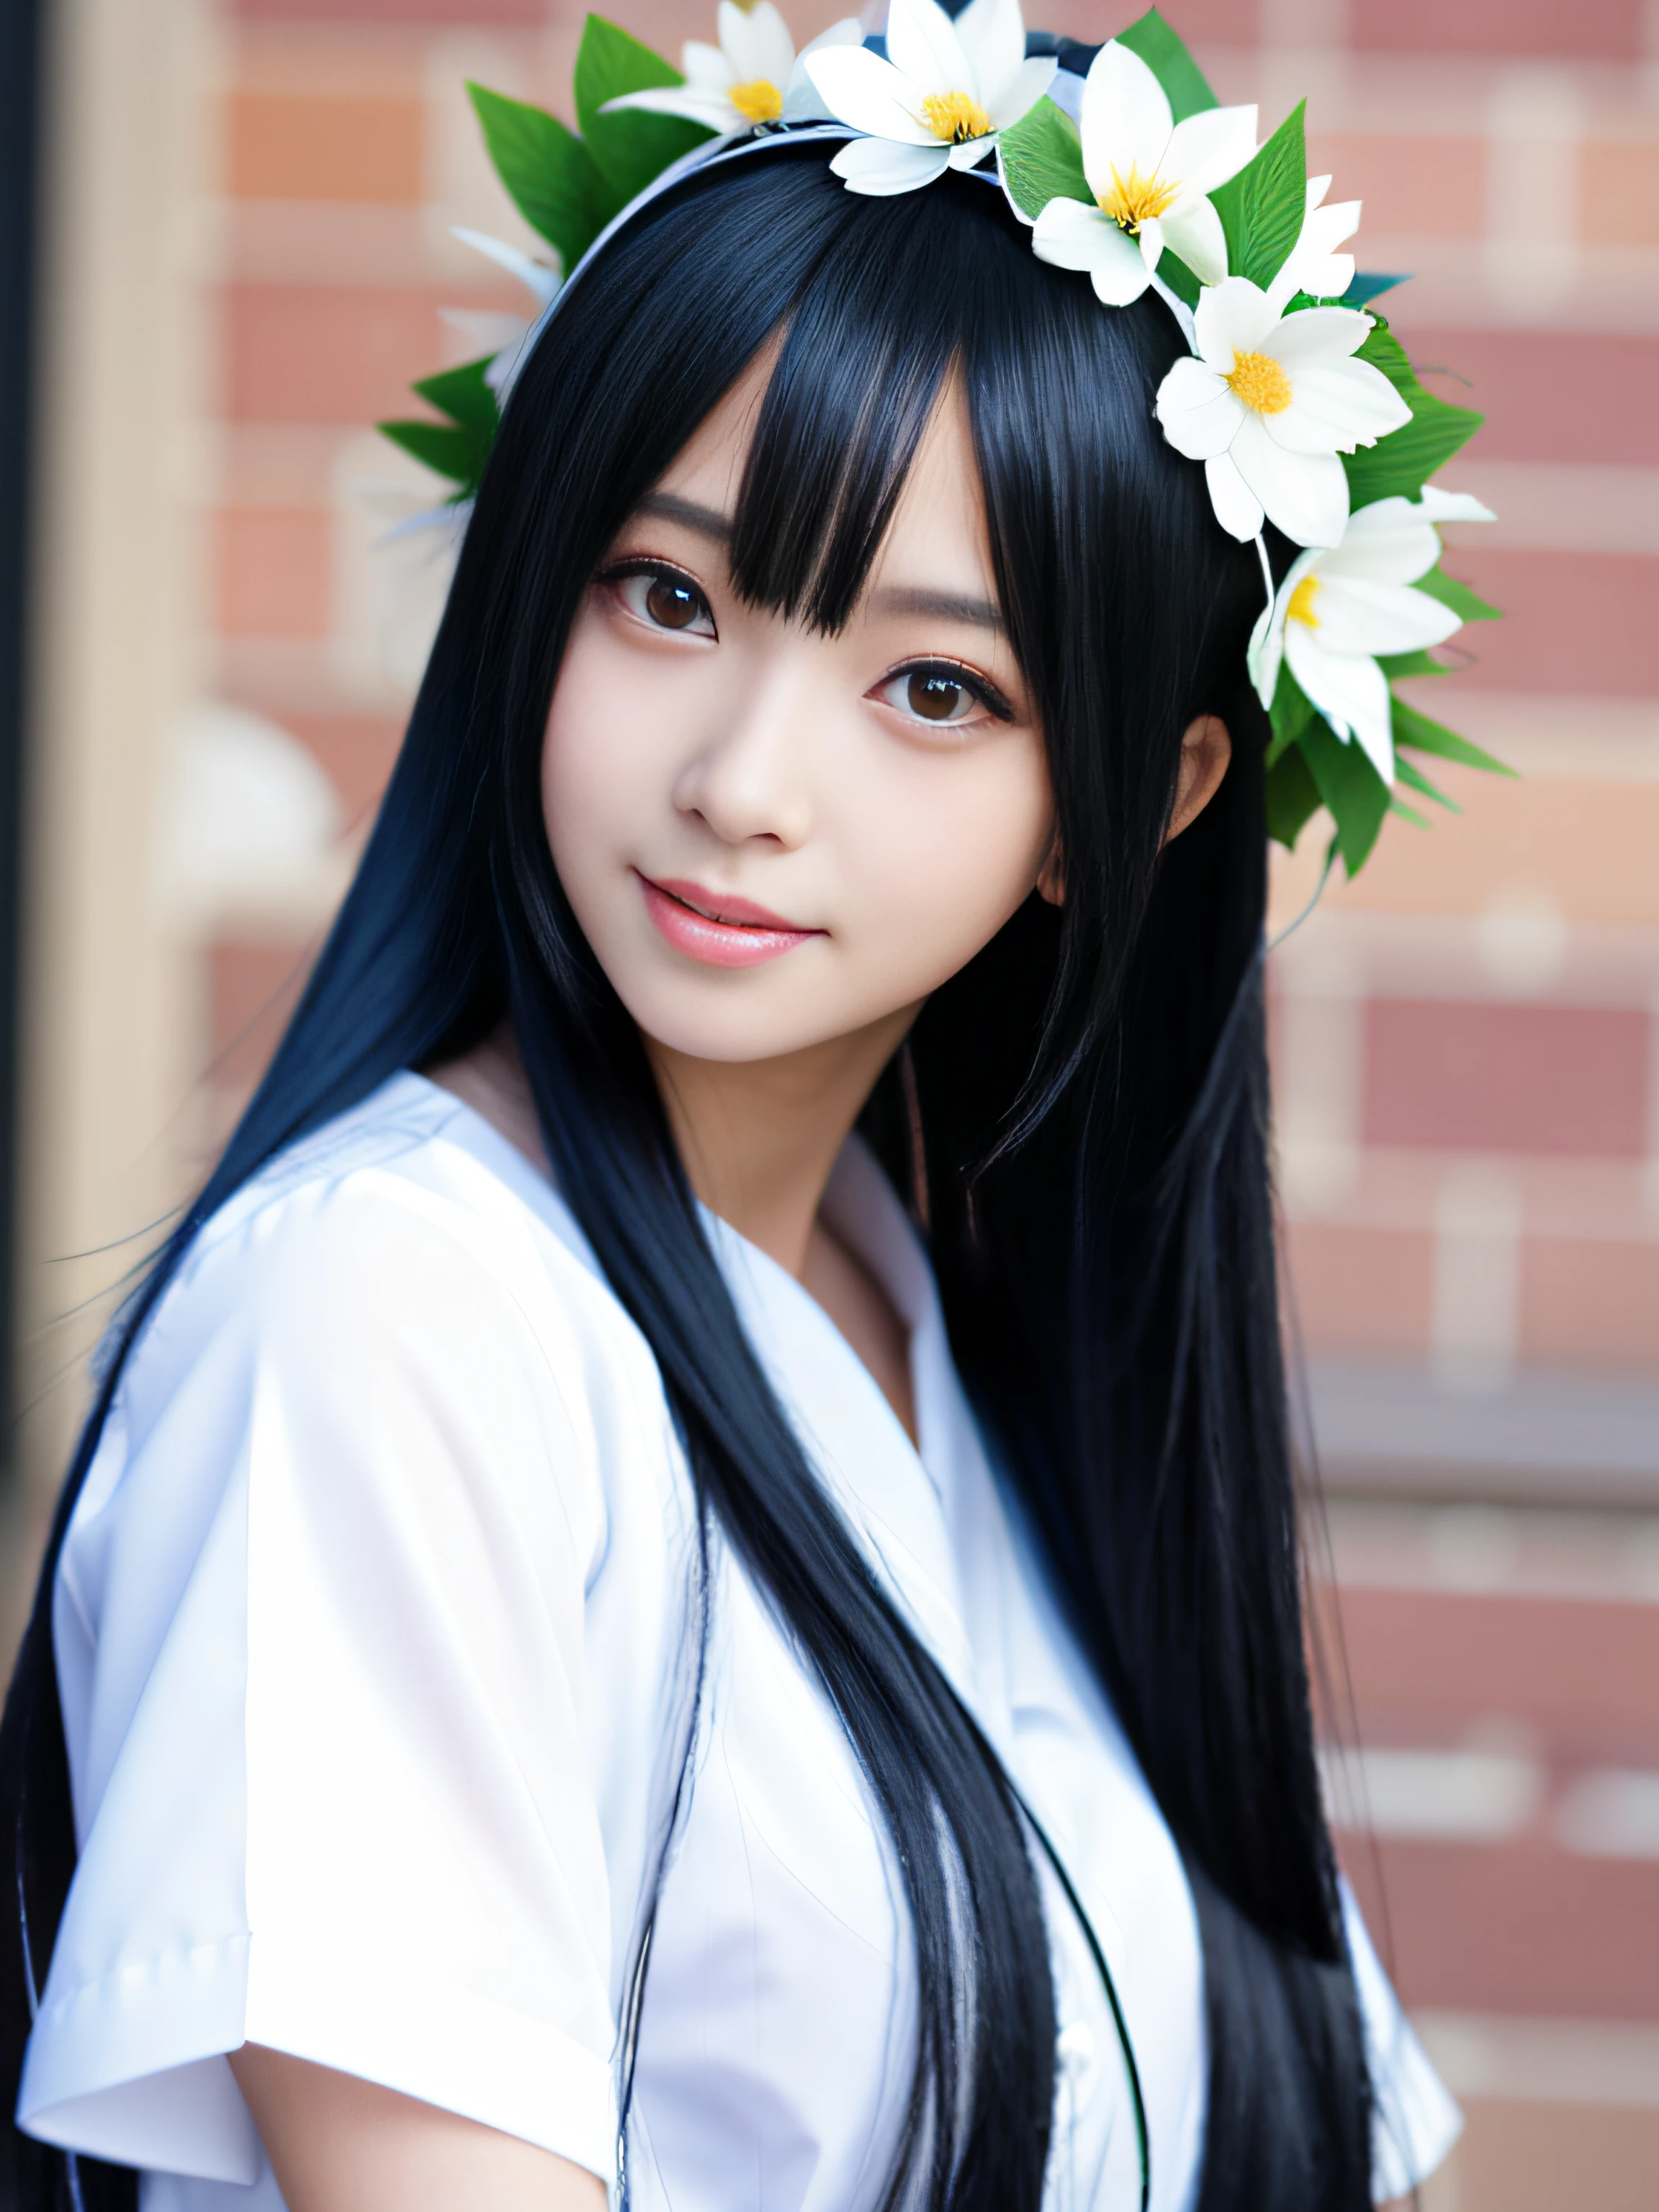 Anime-Mädchen mit langen schwarzen Haaren in weißem Hemd und Blumenkrone, schönes Anime-Porträt, Atemberaubendes Anime-Gesichtsporträt, Engel Lächeln、schönes Anime-Mädchen, Kawaii realistisches Porträt, detailliertes Portrait eines Anime-Mädchens, Porträt Anime Mädchen, realistischer Anime-3D-Stil, realistic junges Anime-Mädchen, realistischer Anime-Kunststil, junges Anime-Mädchen, Anime-Realismus-Stil, realistischer Anime-Kunststil